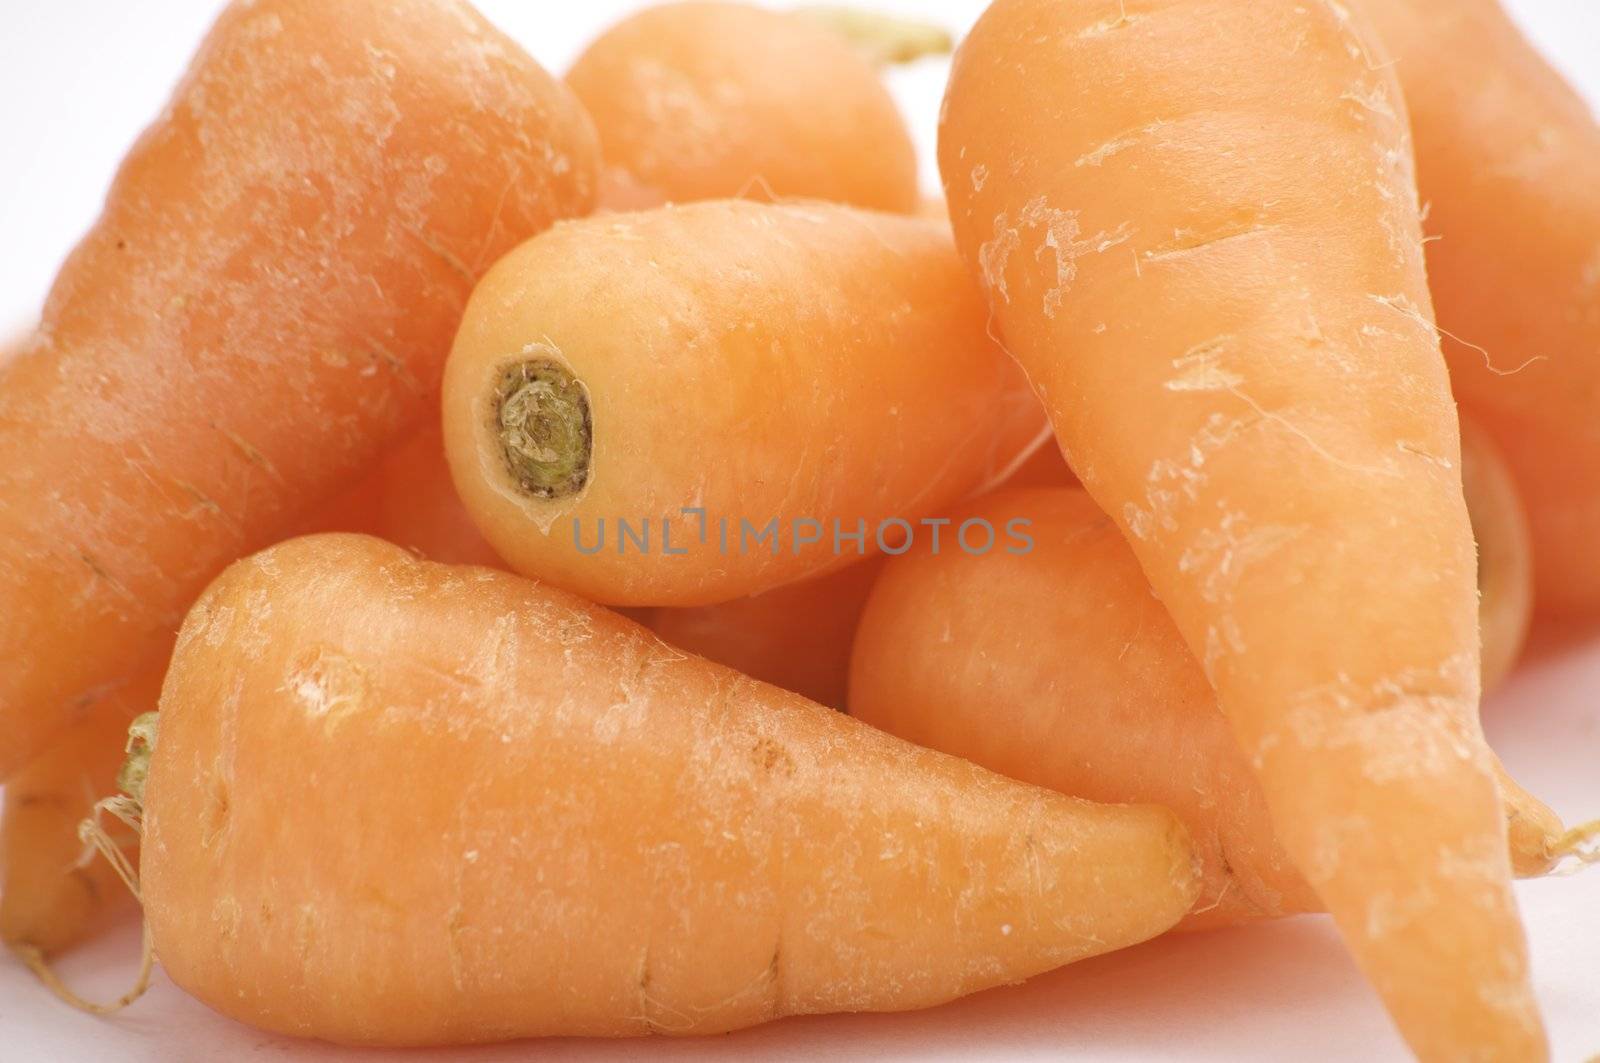 Baby Carrots by sjeacle